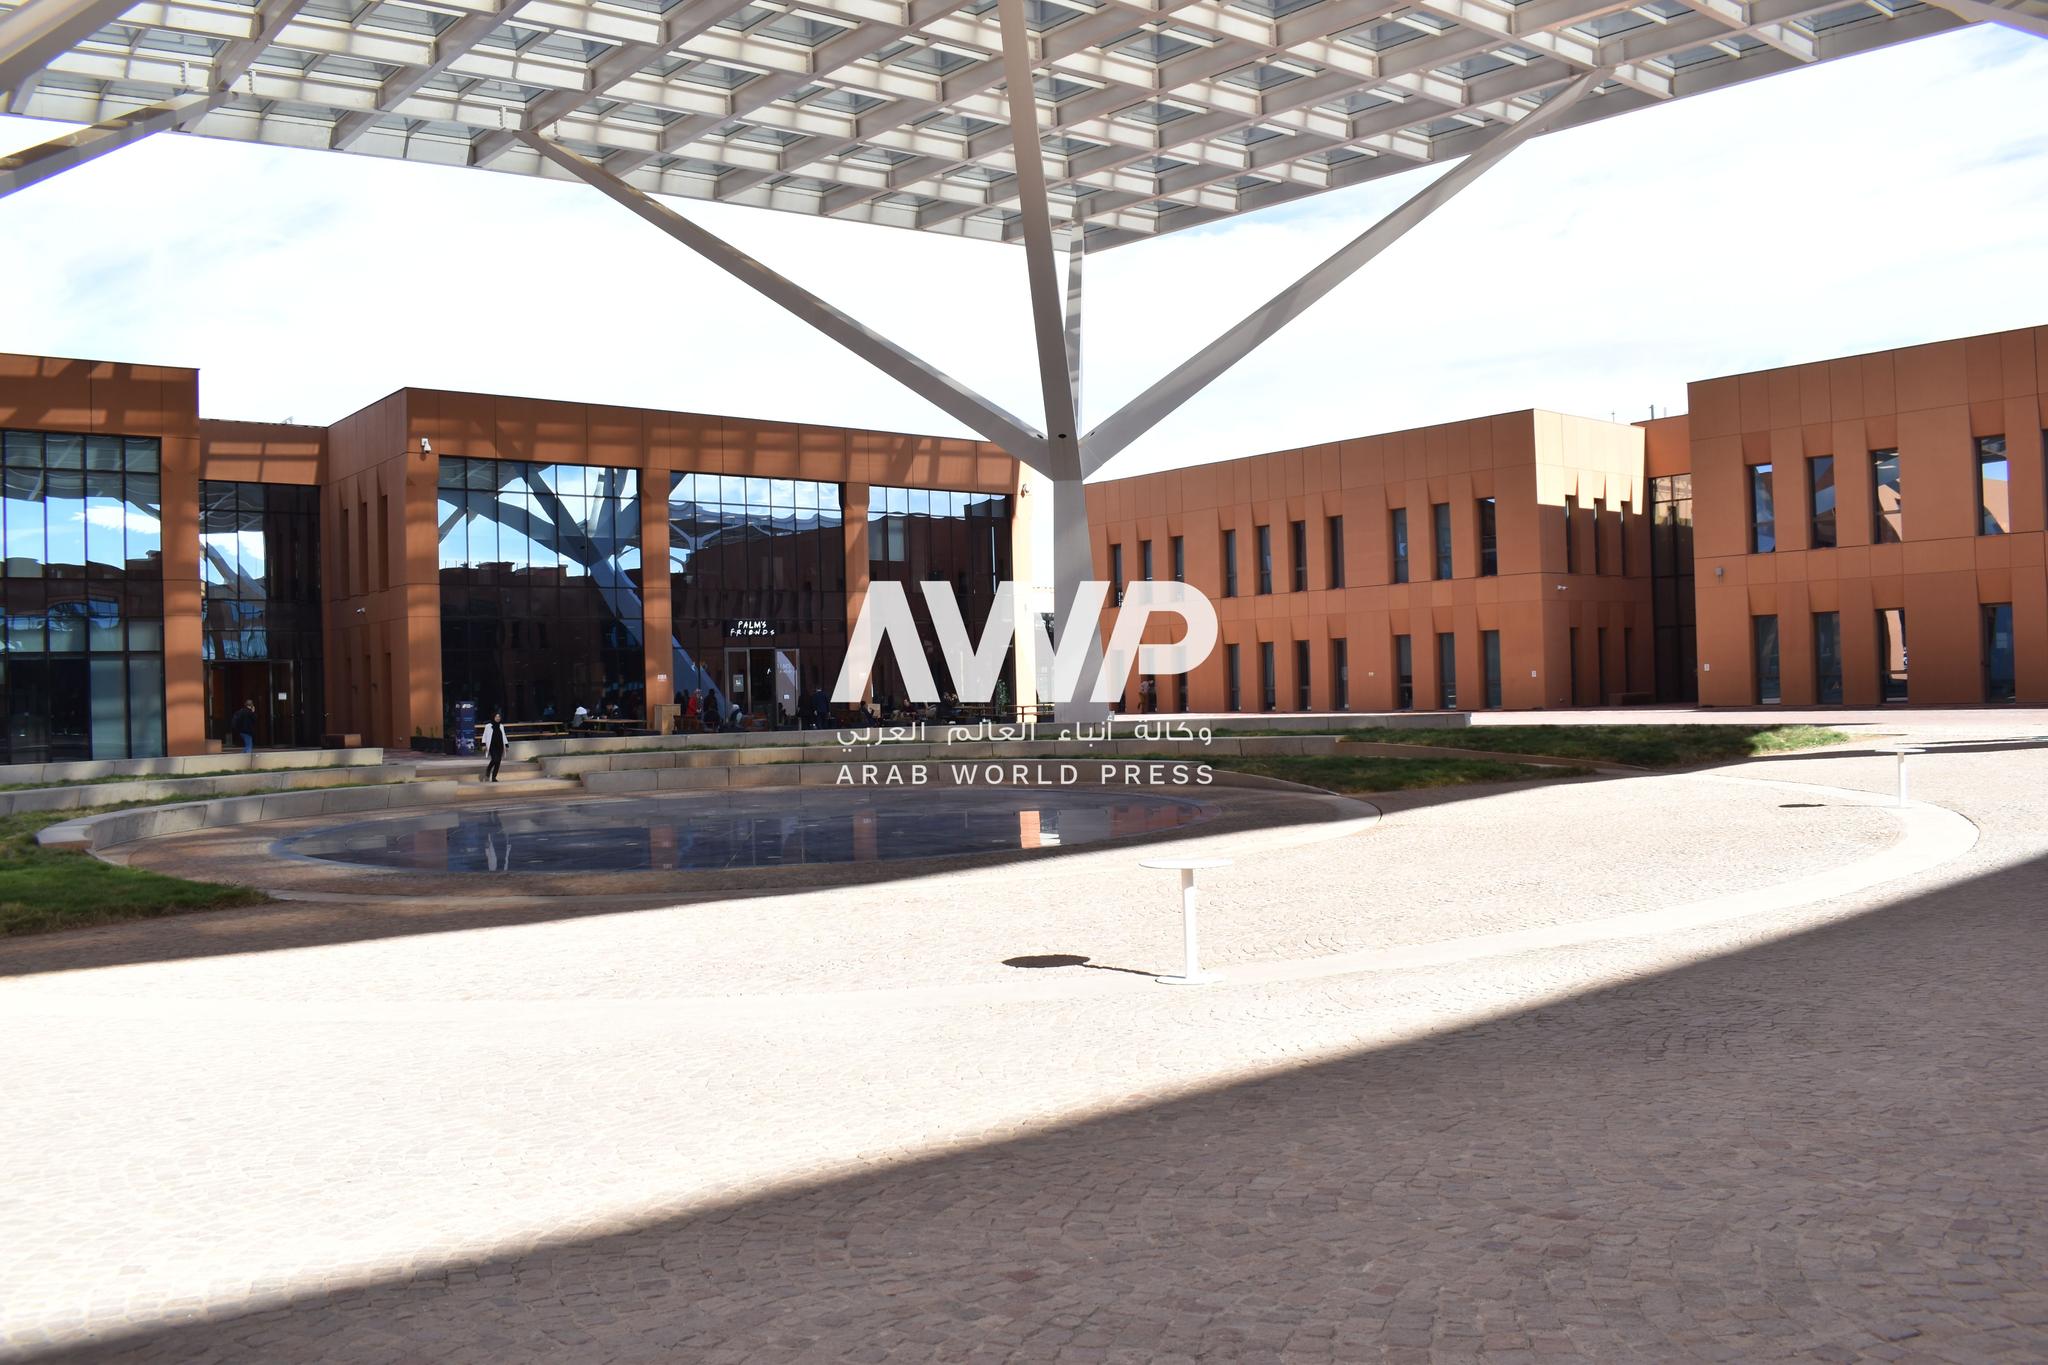 مدخل منطقة ستارت غيت التابعة لجامعة محمد السادس متعددة التخصصات التقنية والذي يمتد على مساحة 3 آلاف متر مربع في جنوب مدينة مراكش